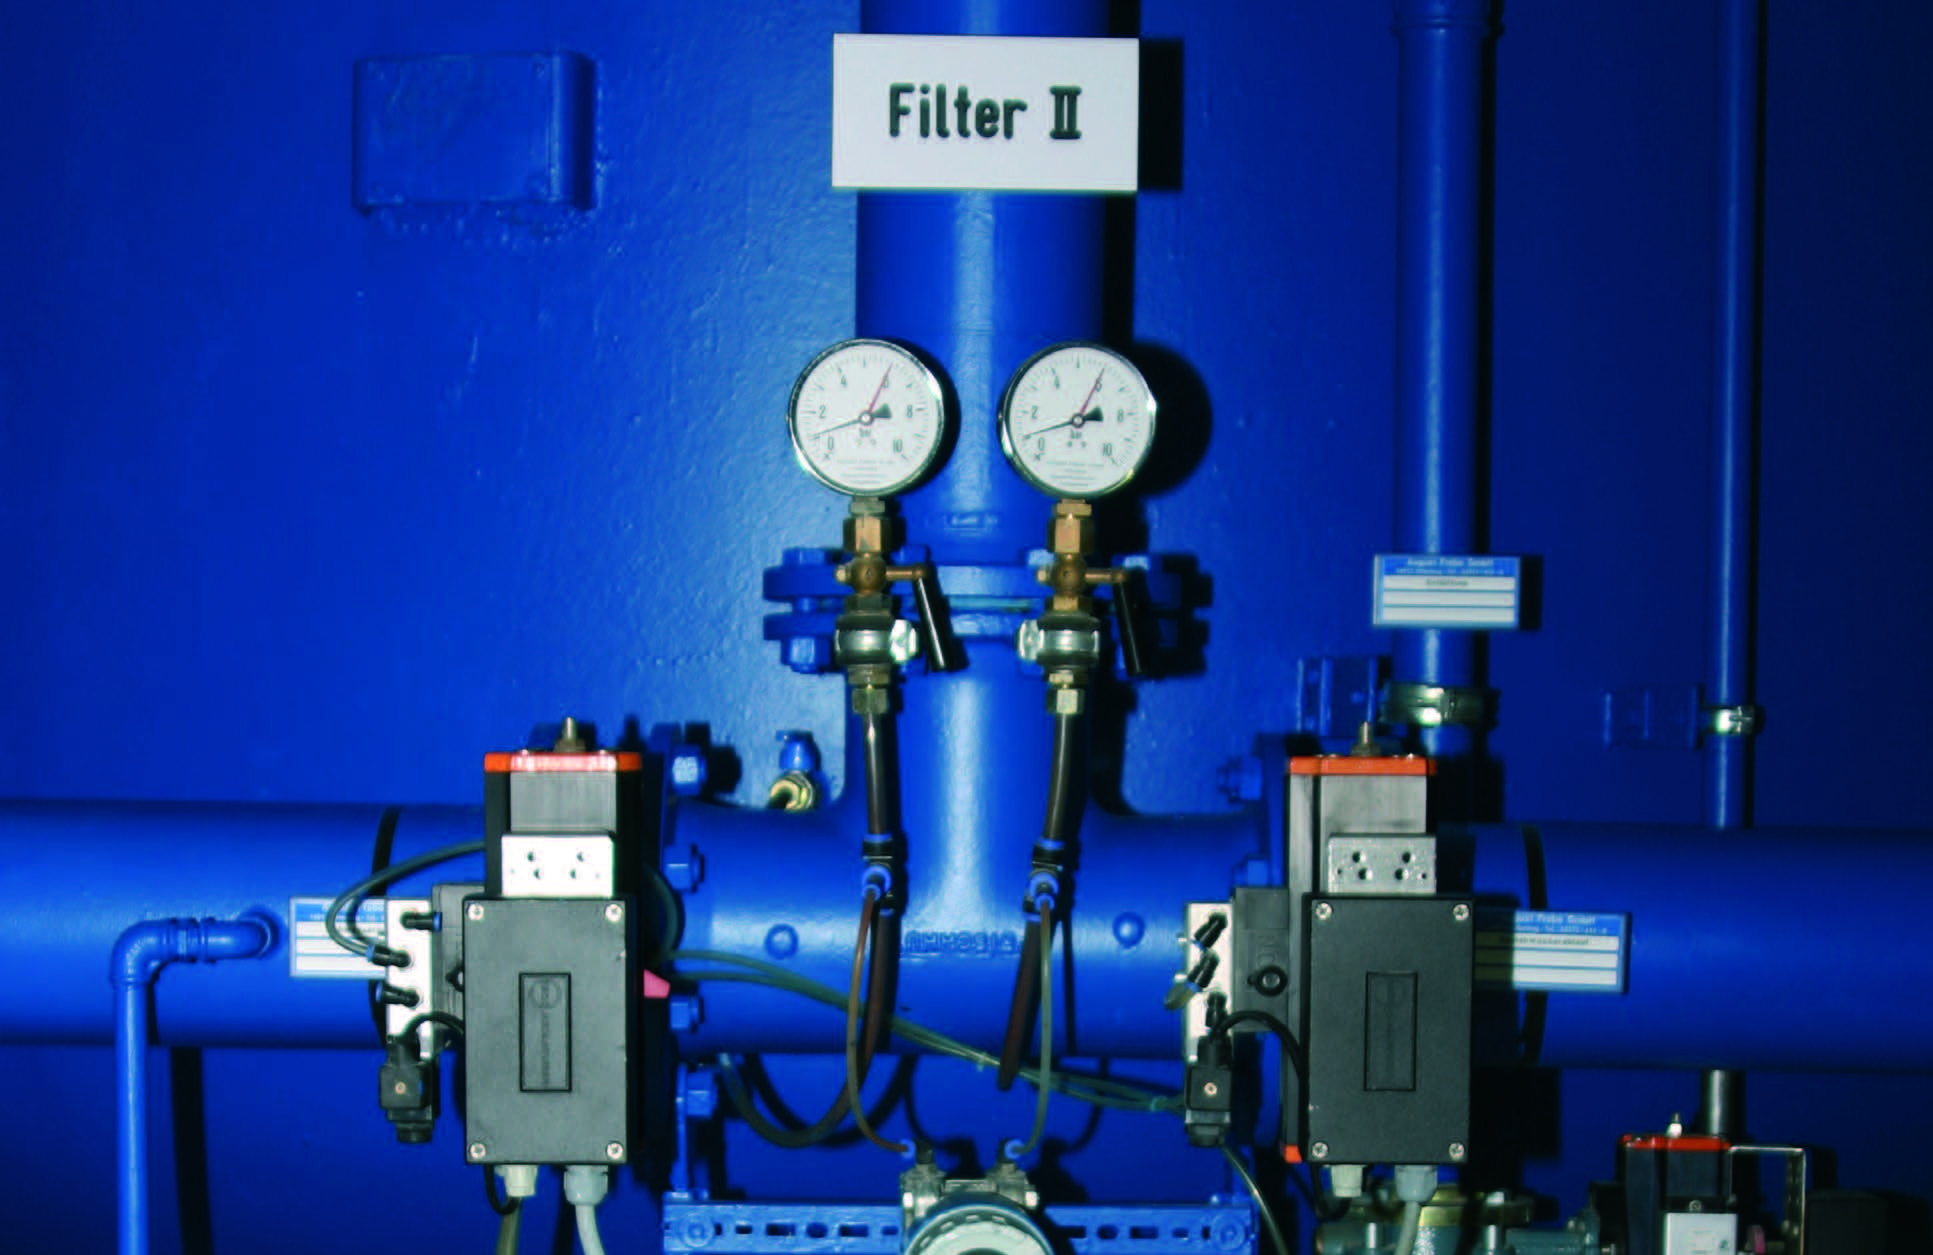 Filter II Kleinmachnow